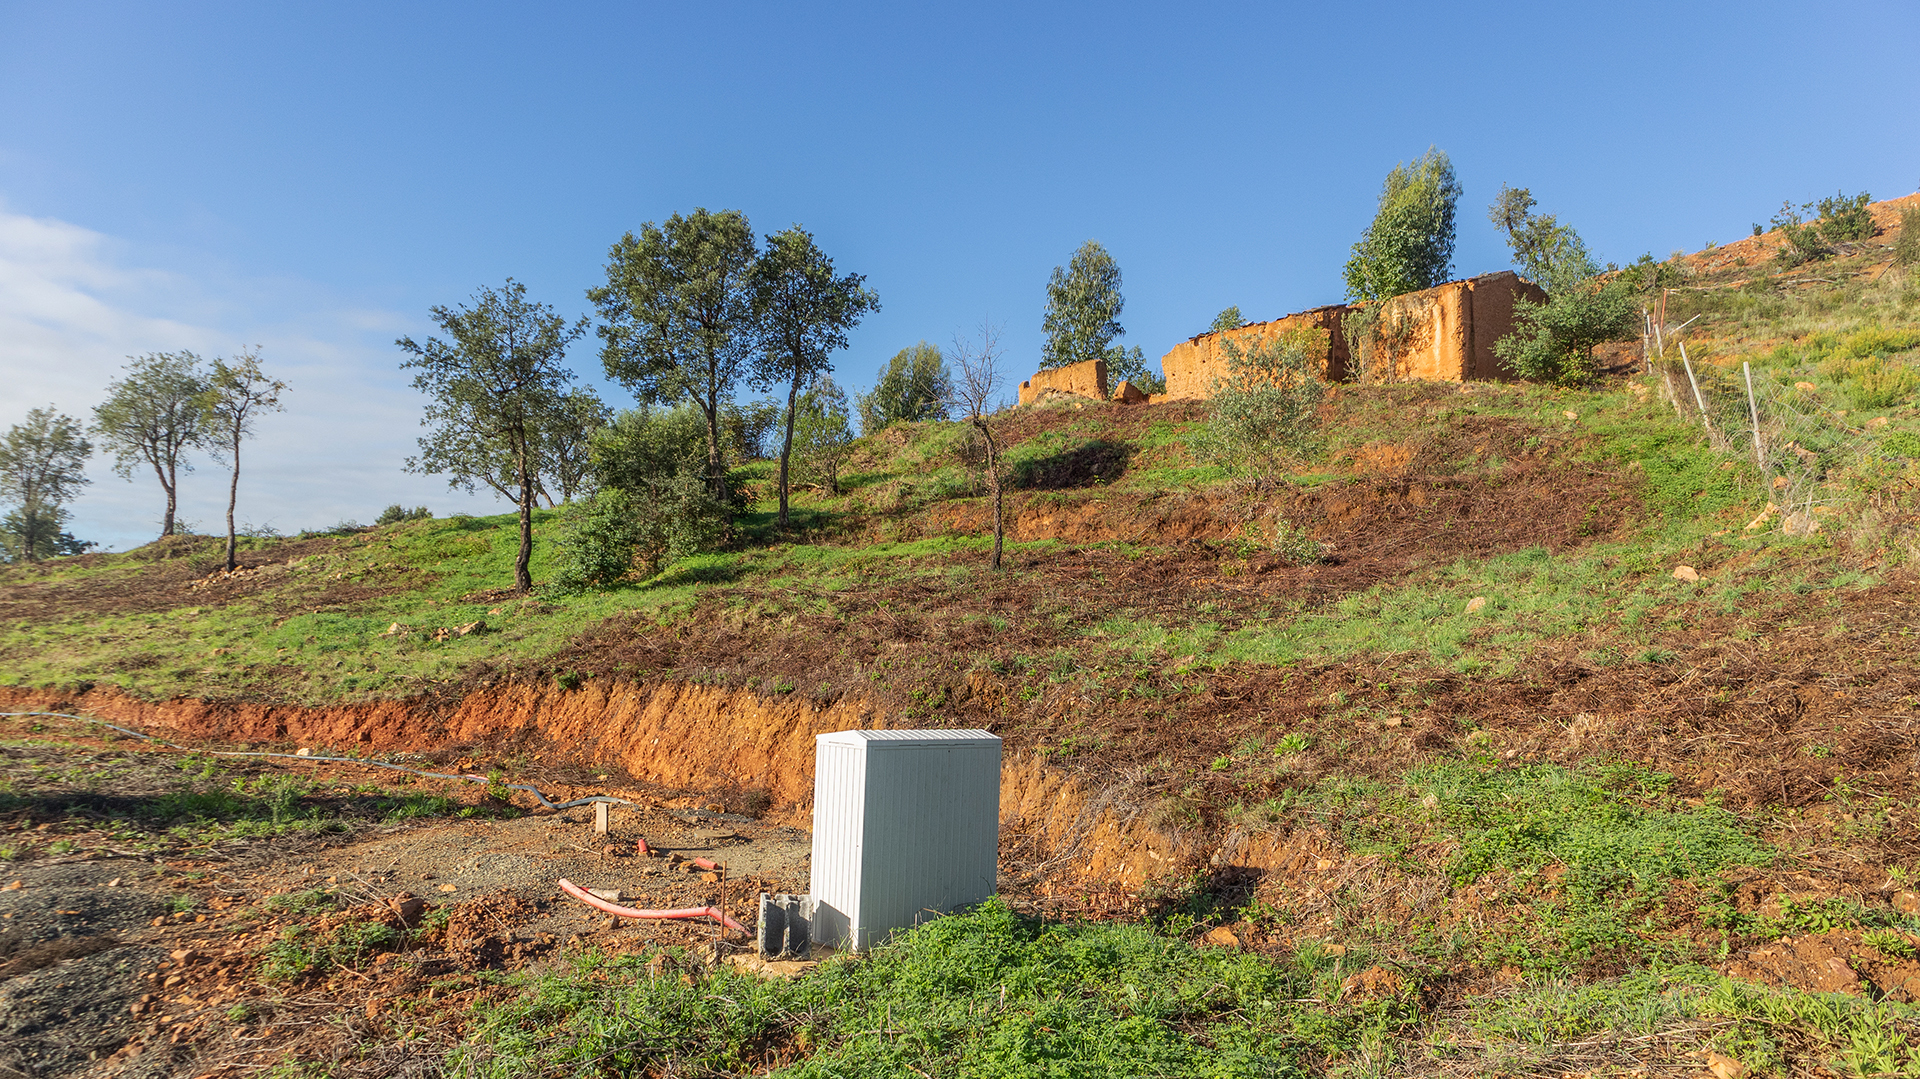 Grundstück in ländlicher Umgebung mit Baugenehmigung für ein 2 SZ Haus, Nahe der Stadt Monchique | LG2016 